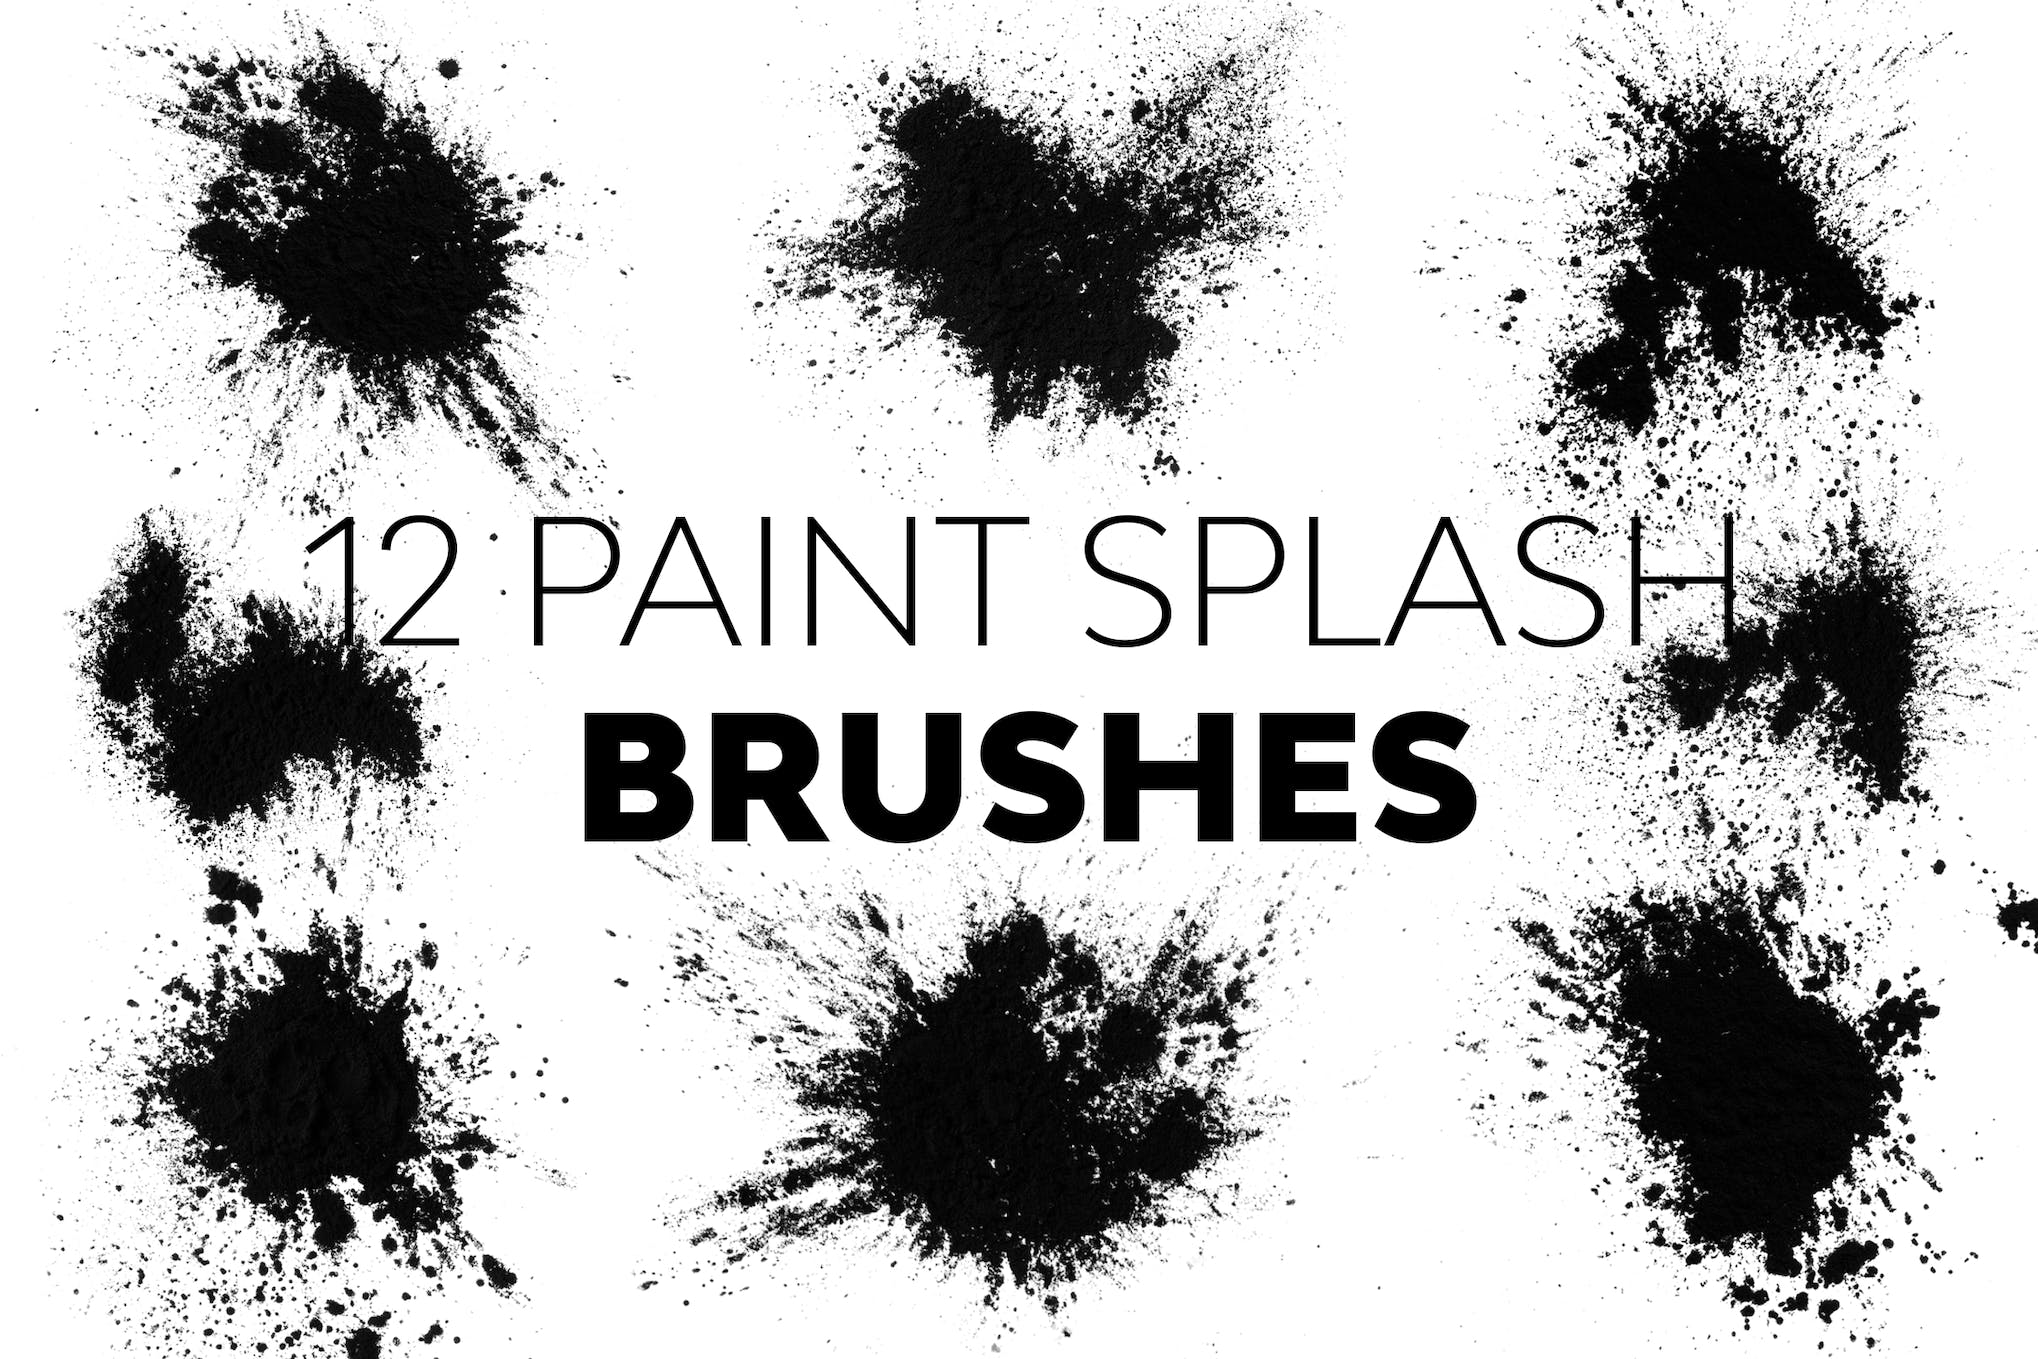 12 Paint Splash Brushes for Photoshop